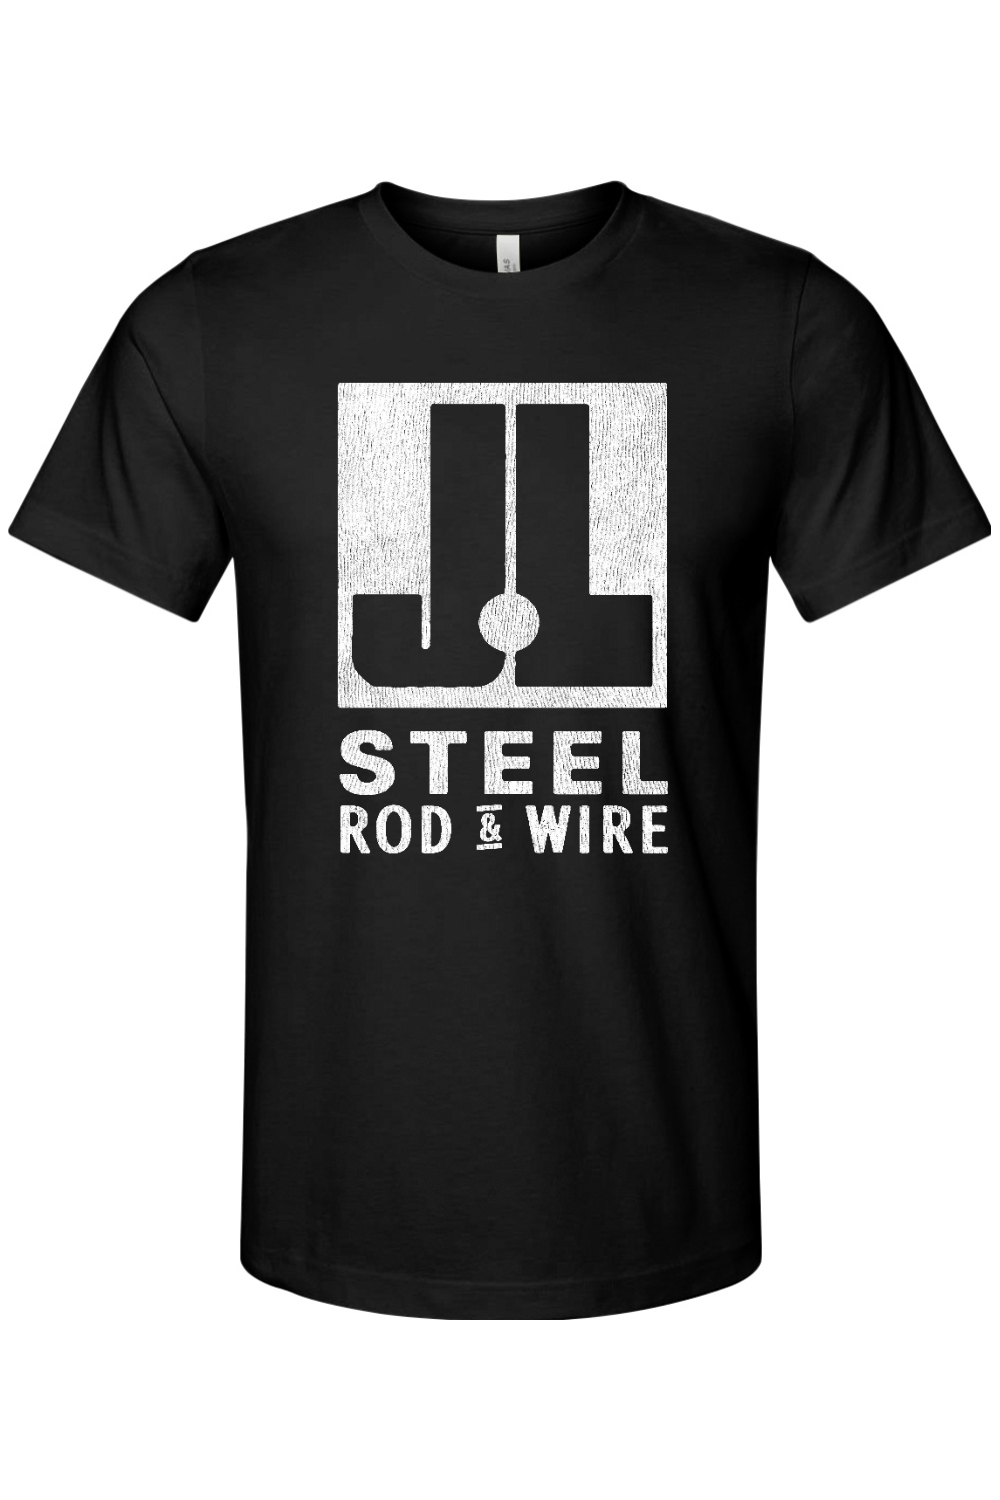 J&L Steel - Rod & Wire - Bella + Canvas Jersey Tee - Yinzylvania